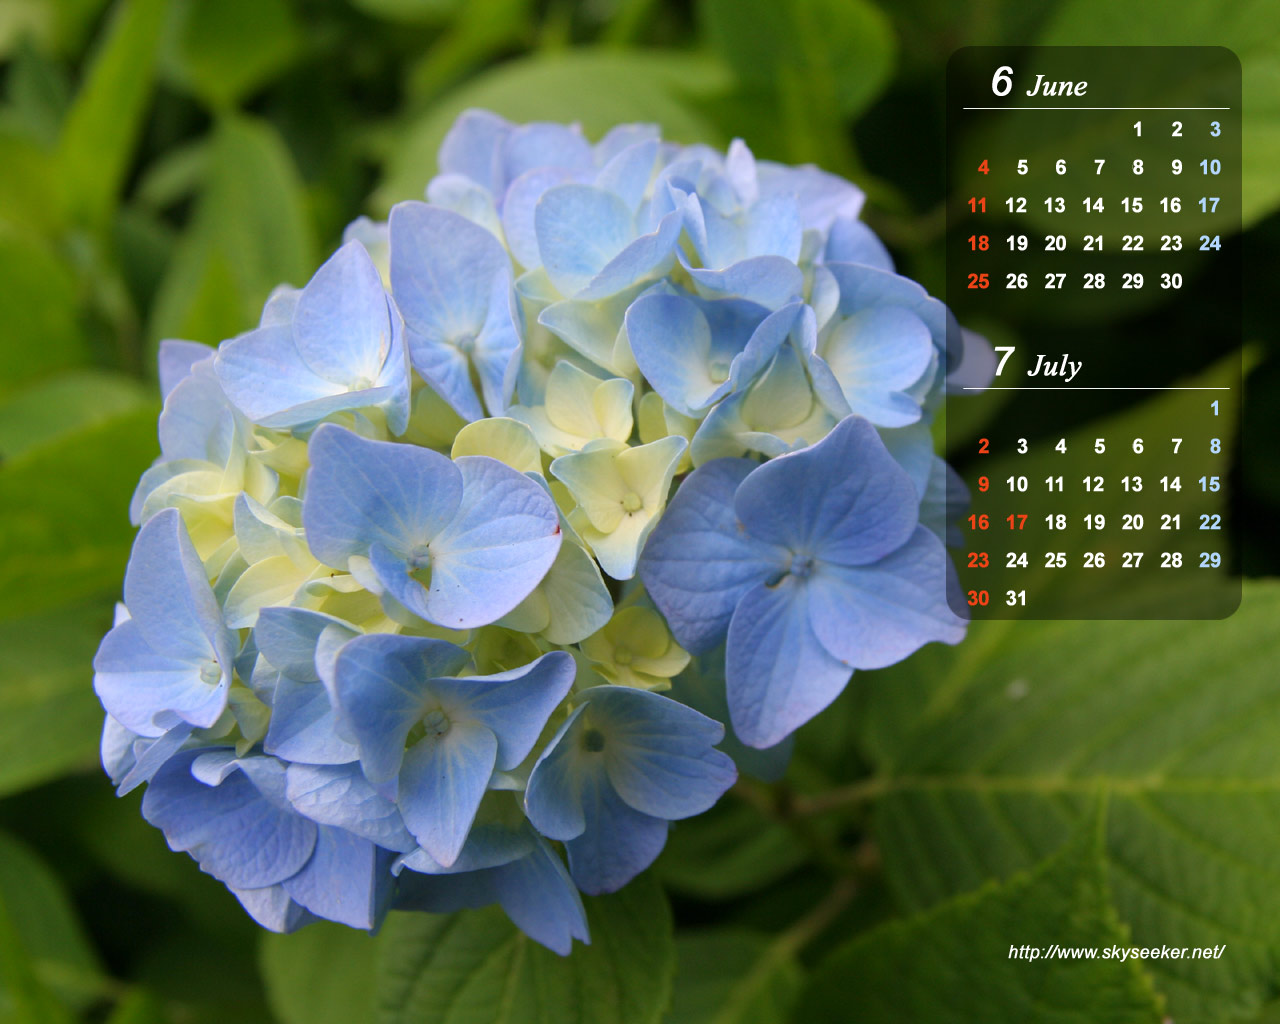 壁紙カレンダー 06年6月 7月 紫陽花バージョン Skyseeker 空 雲の無料写真サイト